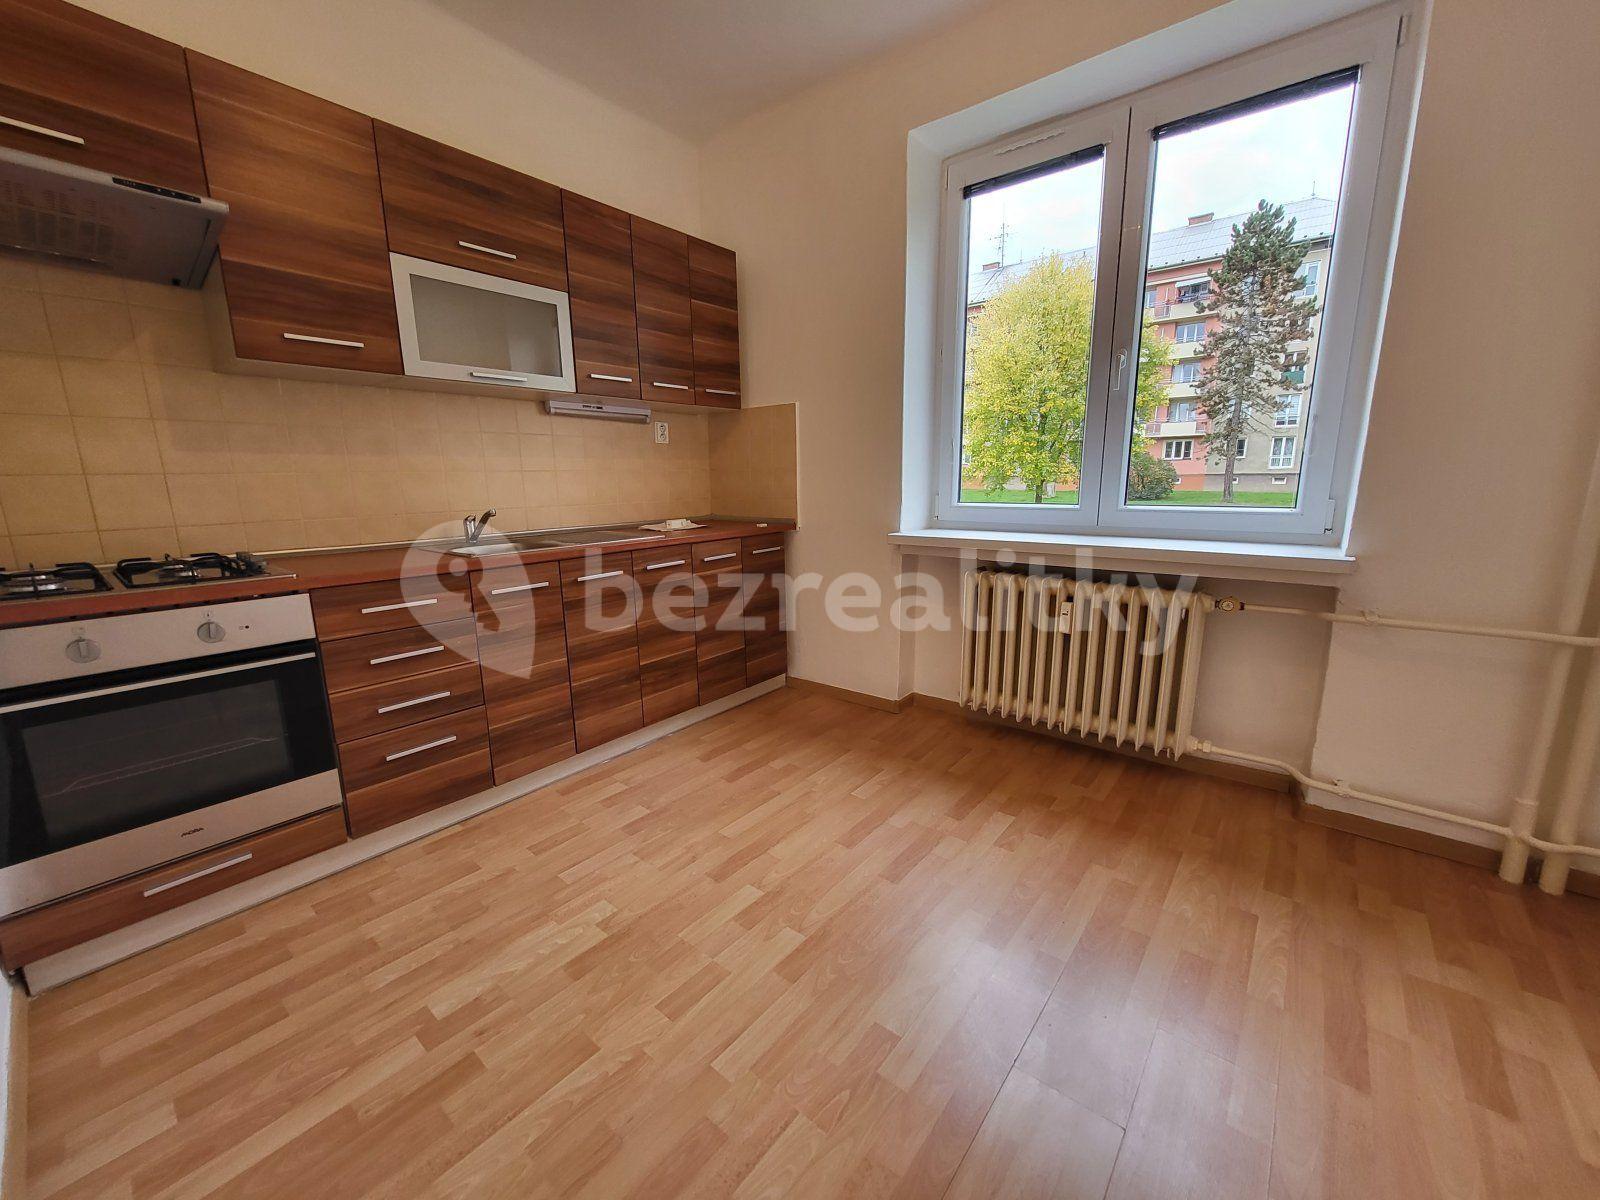 2 bedroom flat to rent, 54 m², Na Nábřeží, Havířov, Moravskoslezský Region